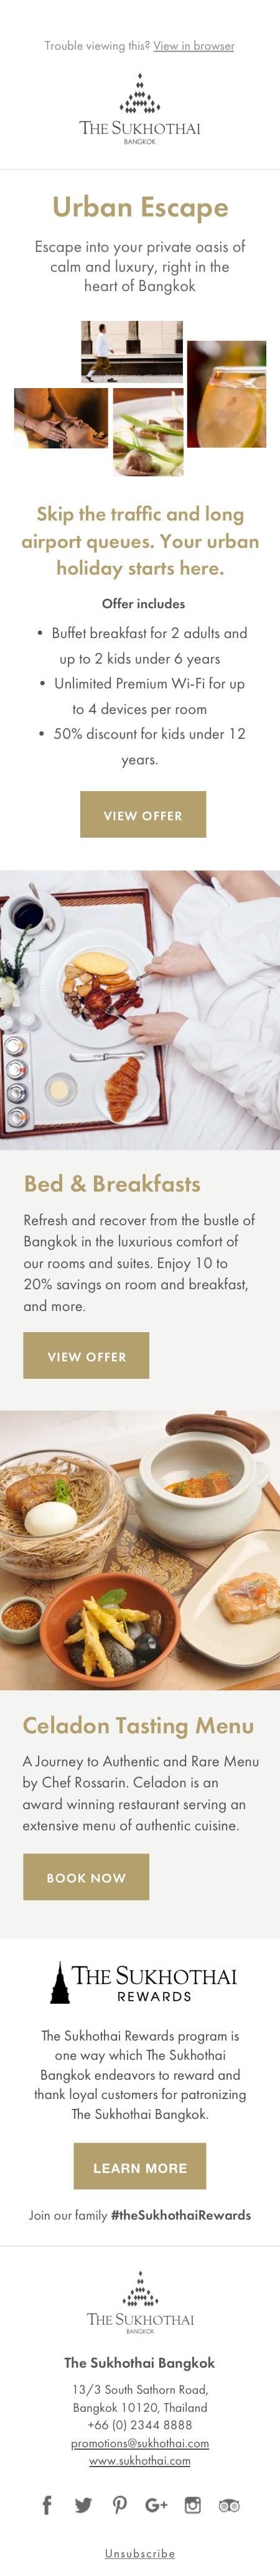 The Sukhothai Hotel email